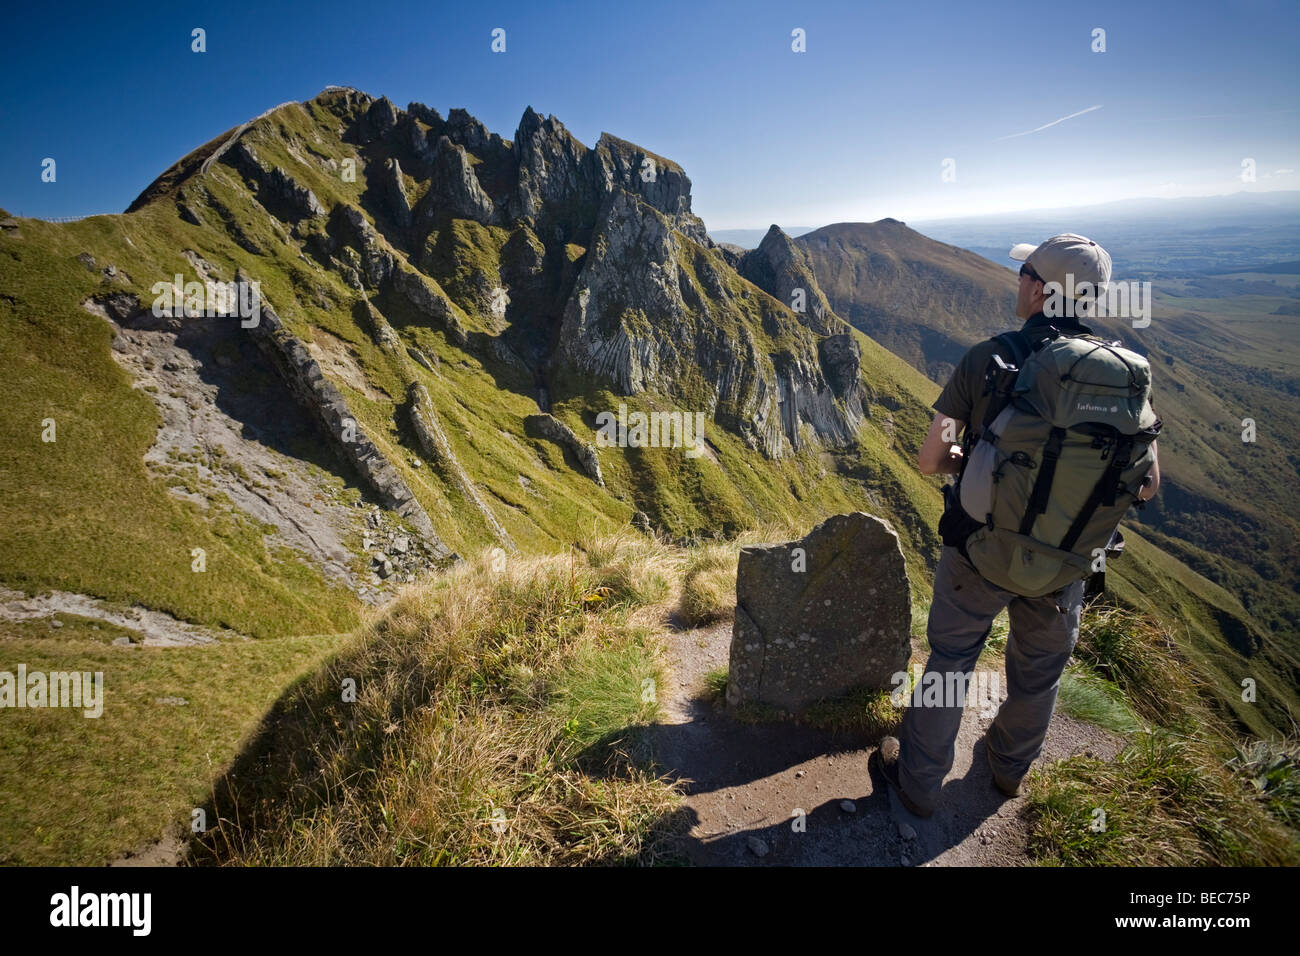 Un escursionista nella parte anteriore del 'Puy de Sancy' top (Puy de Dôme - Francia). Randonneur devant le sommet du Puy de Sancy. Foto Stock